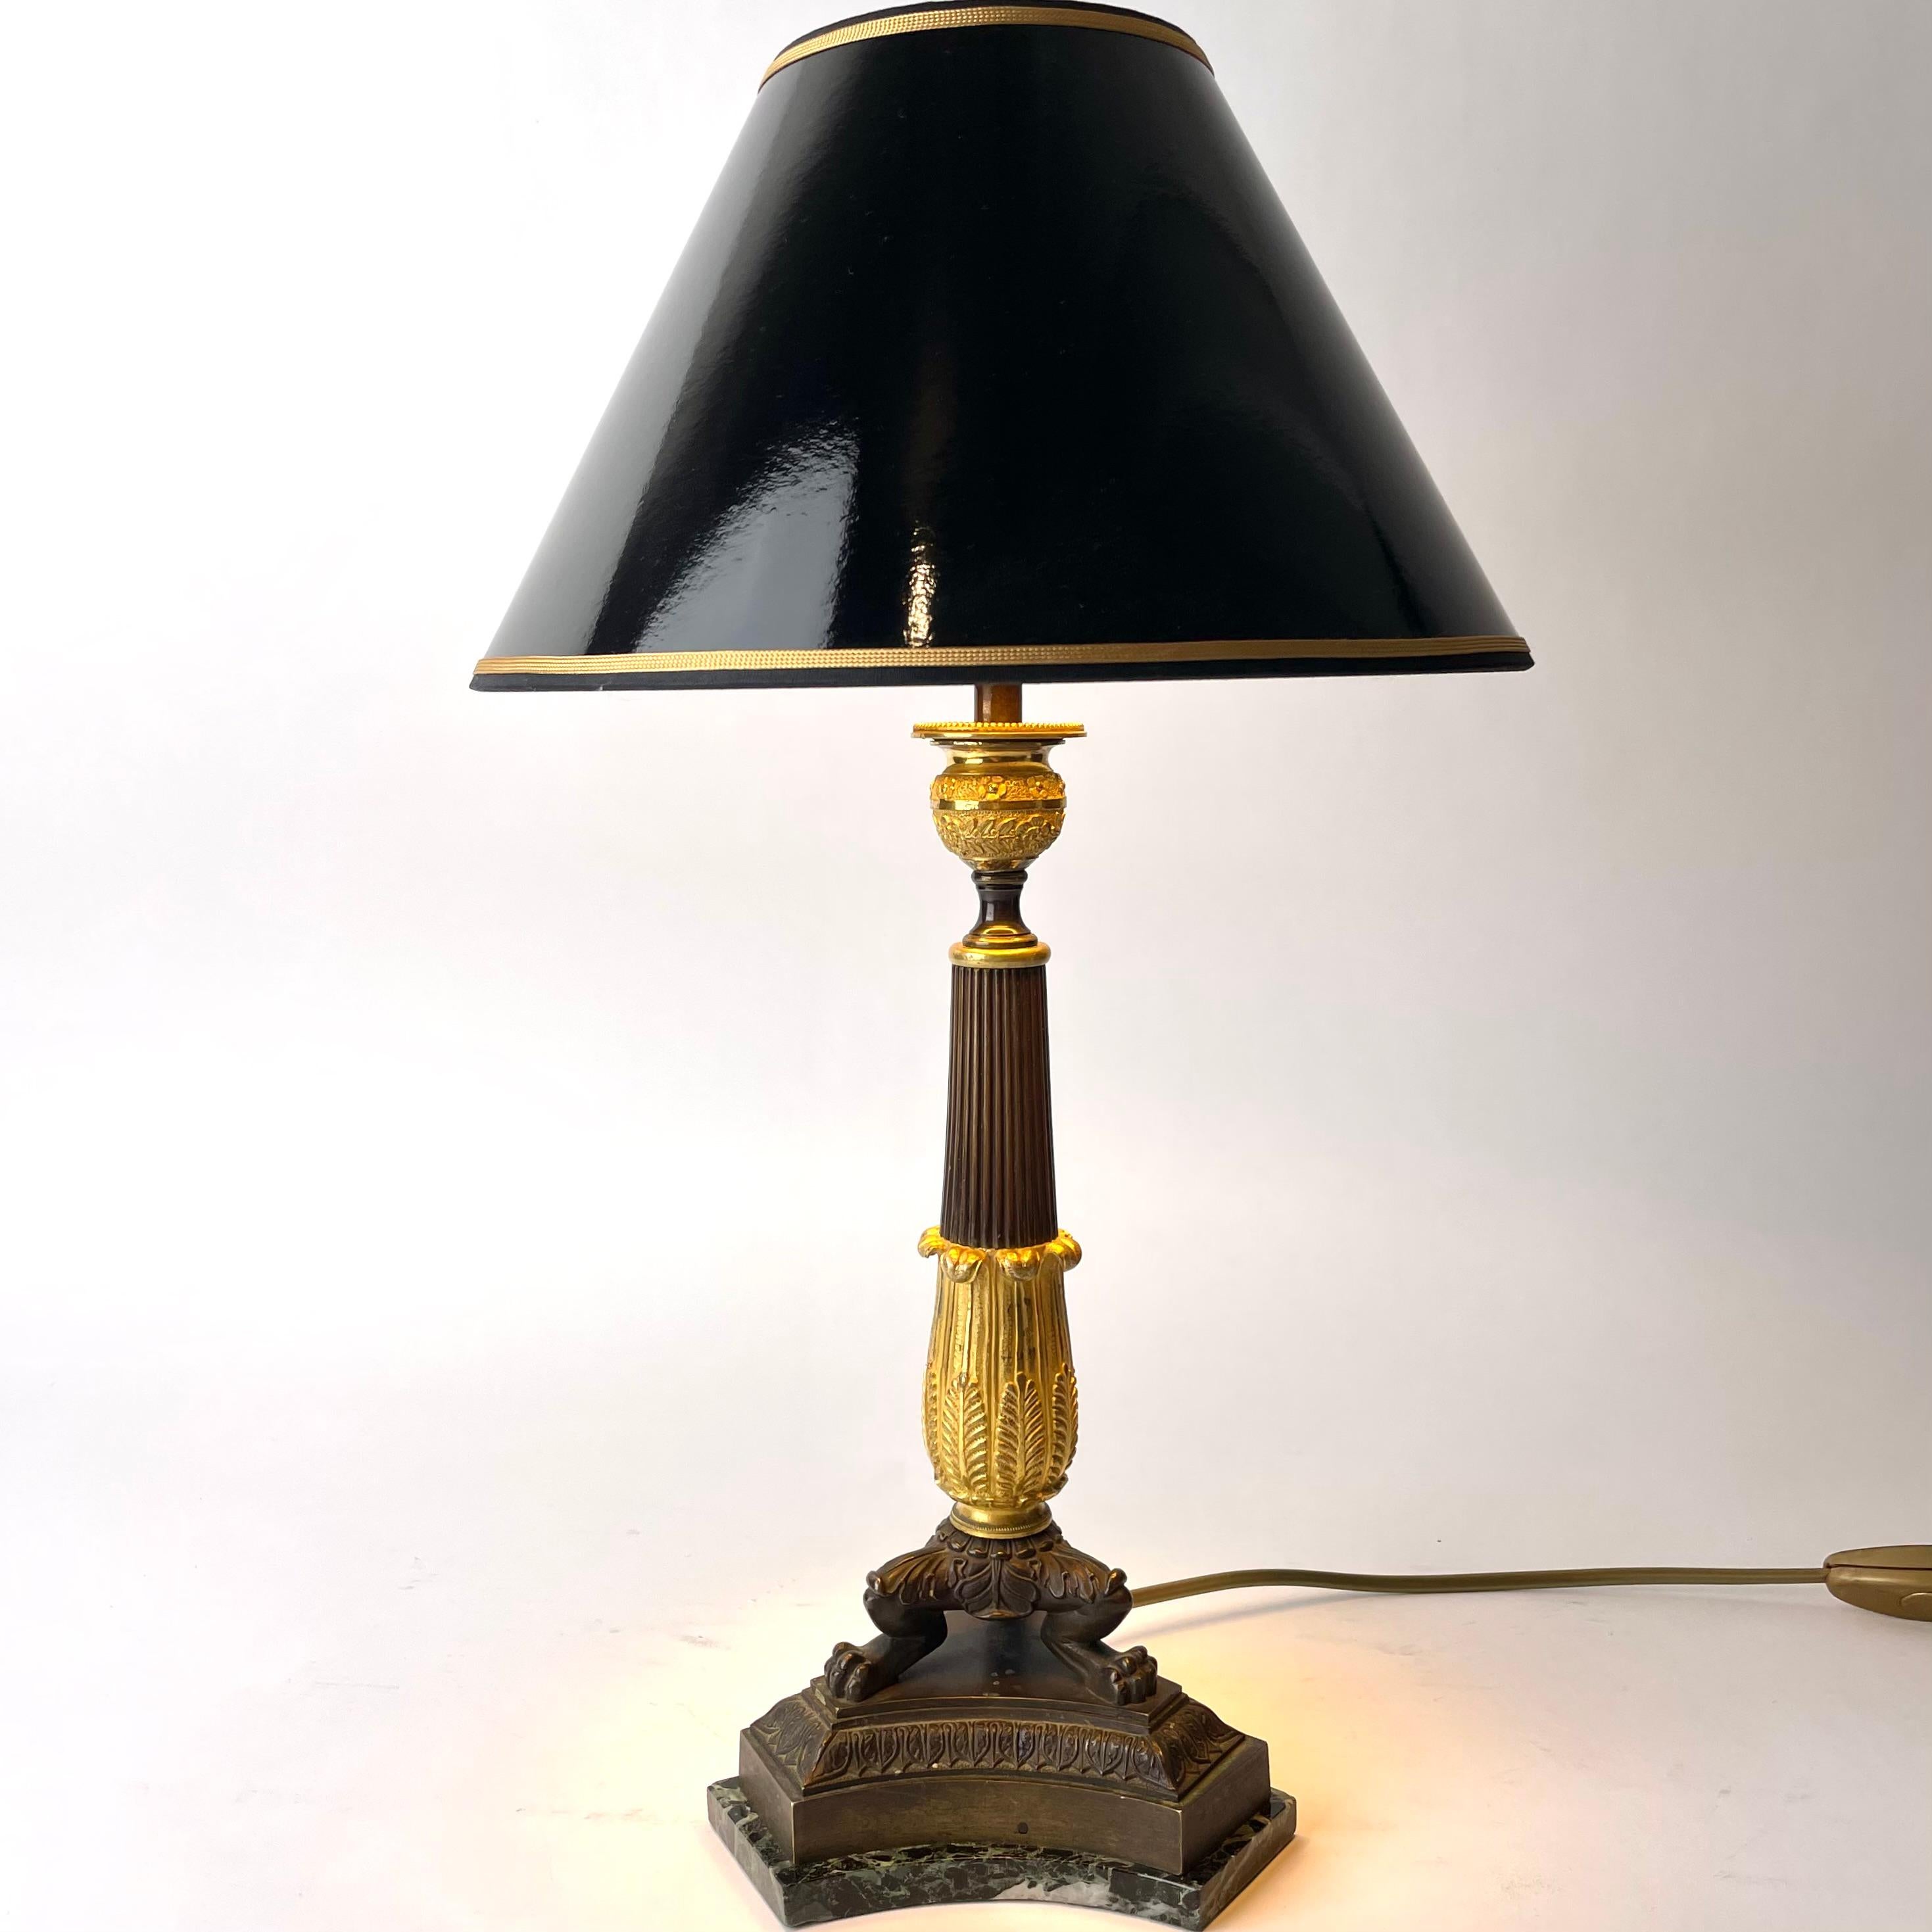 Elegante lampe de table en bronze doré et patiné foncé avec une base en marbre. Empire, fabriqué dans les années 1820. A l'origine, il s'agissait d'un chandelier empire converti en lampe de table au début du 20e siècle.

Électricité refaite à neuf